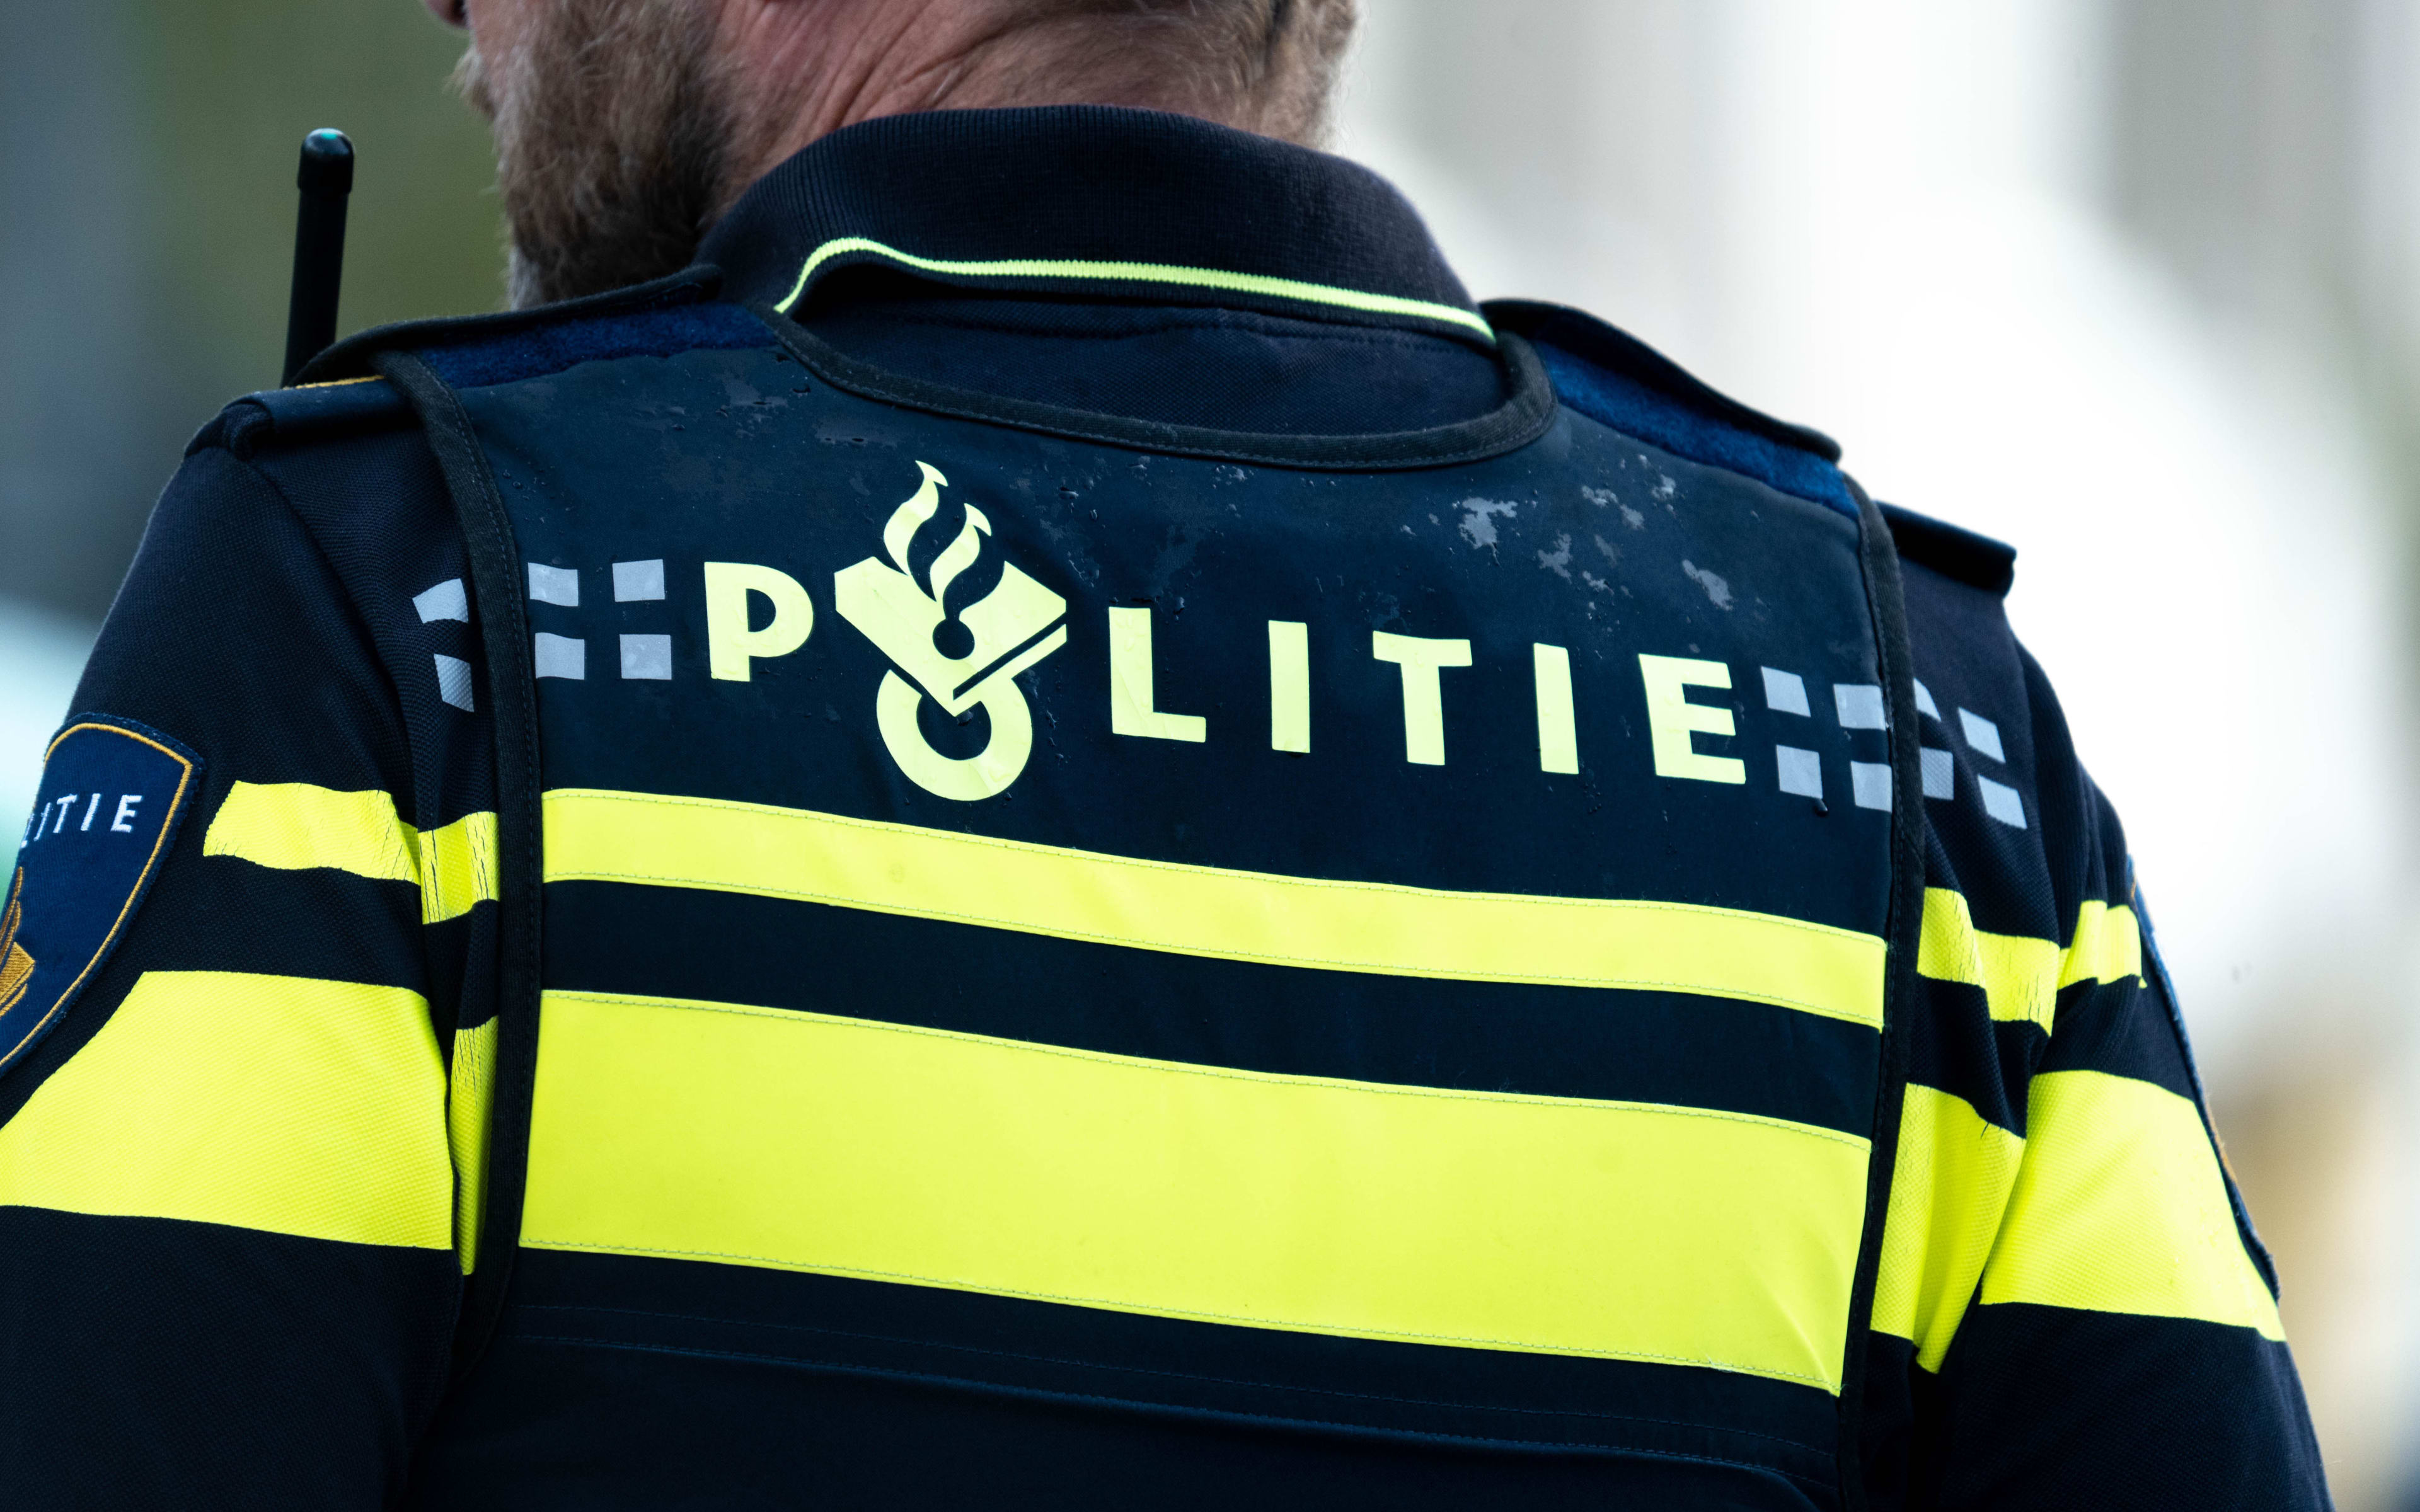 Held voorkomt straatroof 25-jarige vrouw in Groningen, politie zoekt getuigen